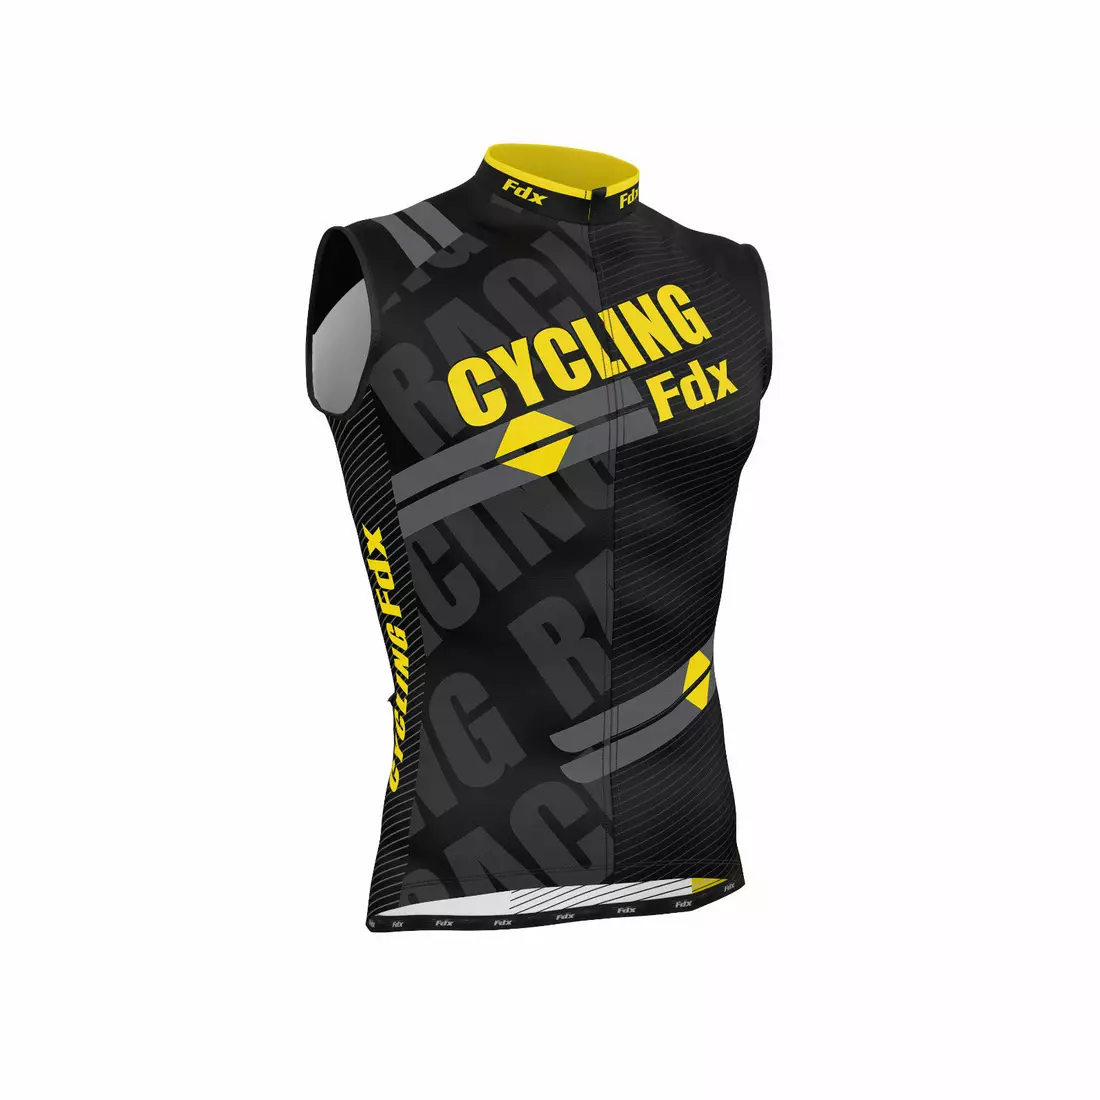 FDX 1050 pánsky cyklistický dres bez rukávov, čierny a žltý